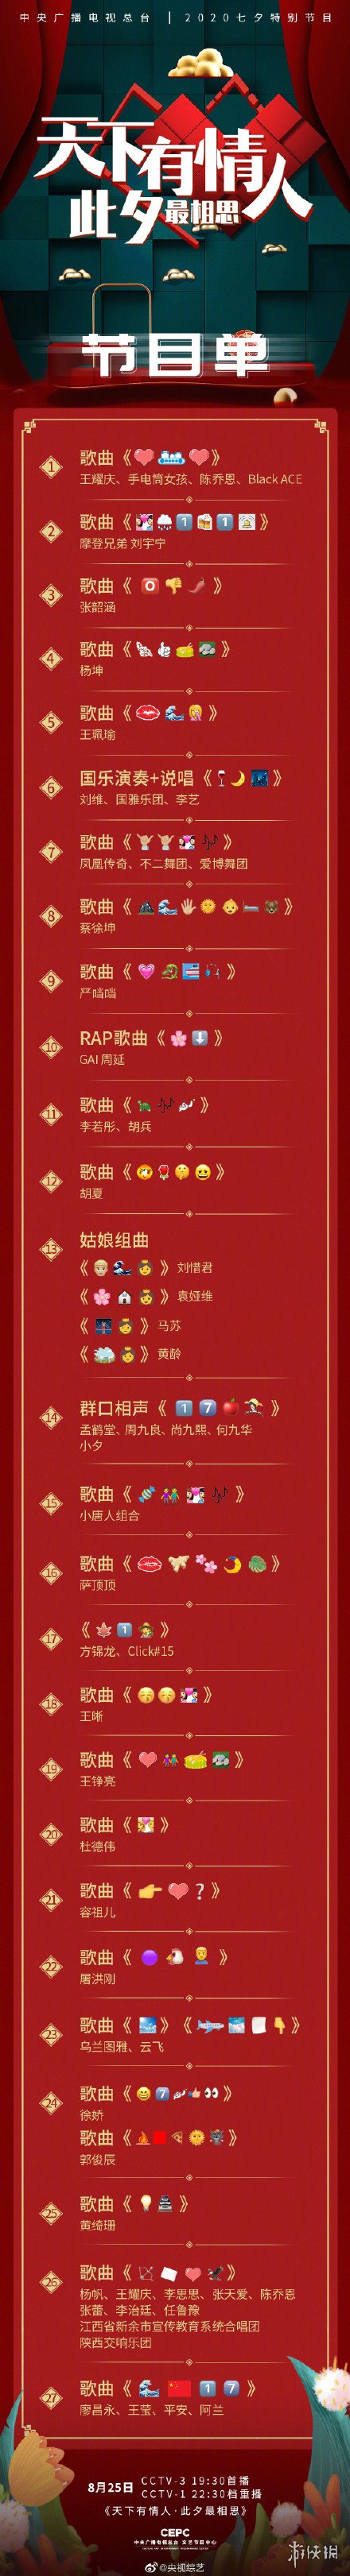 央视七夕晚会emoji节目单 央视七夕晚会emoji节目单一览